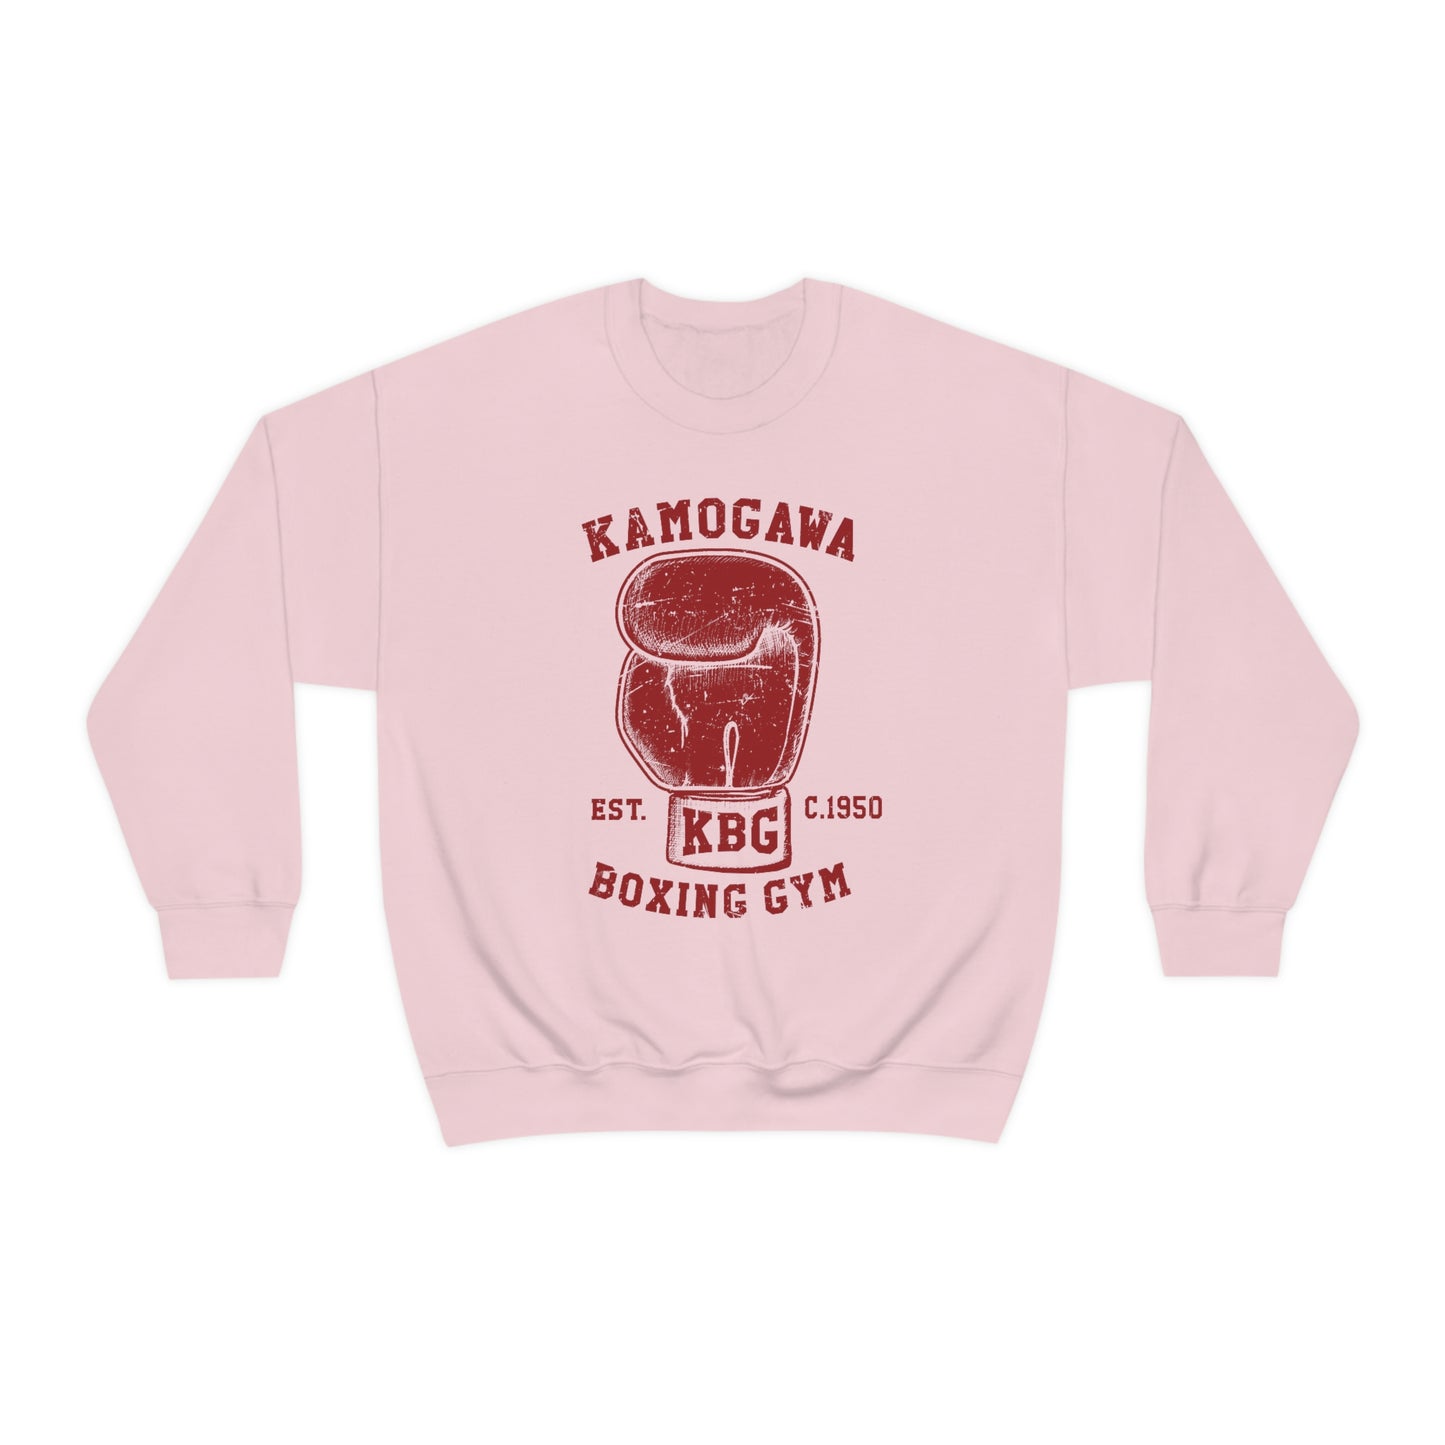 Kamogawas gym sweatshirt crew neck